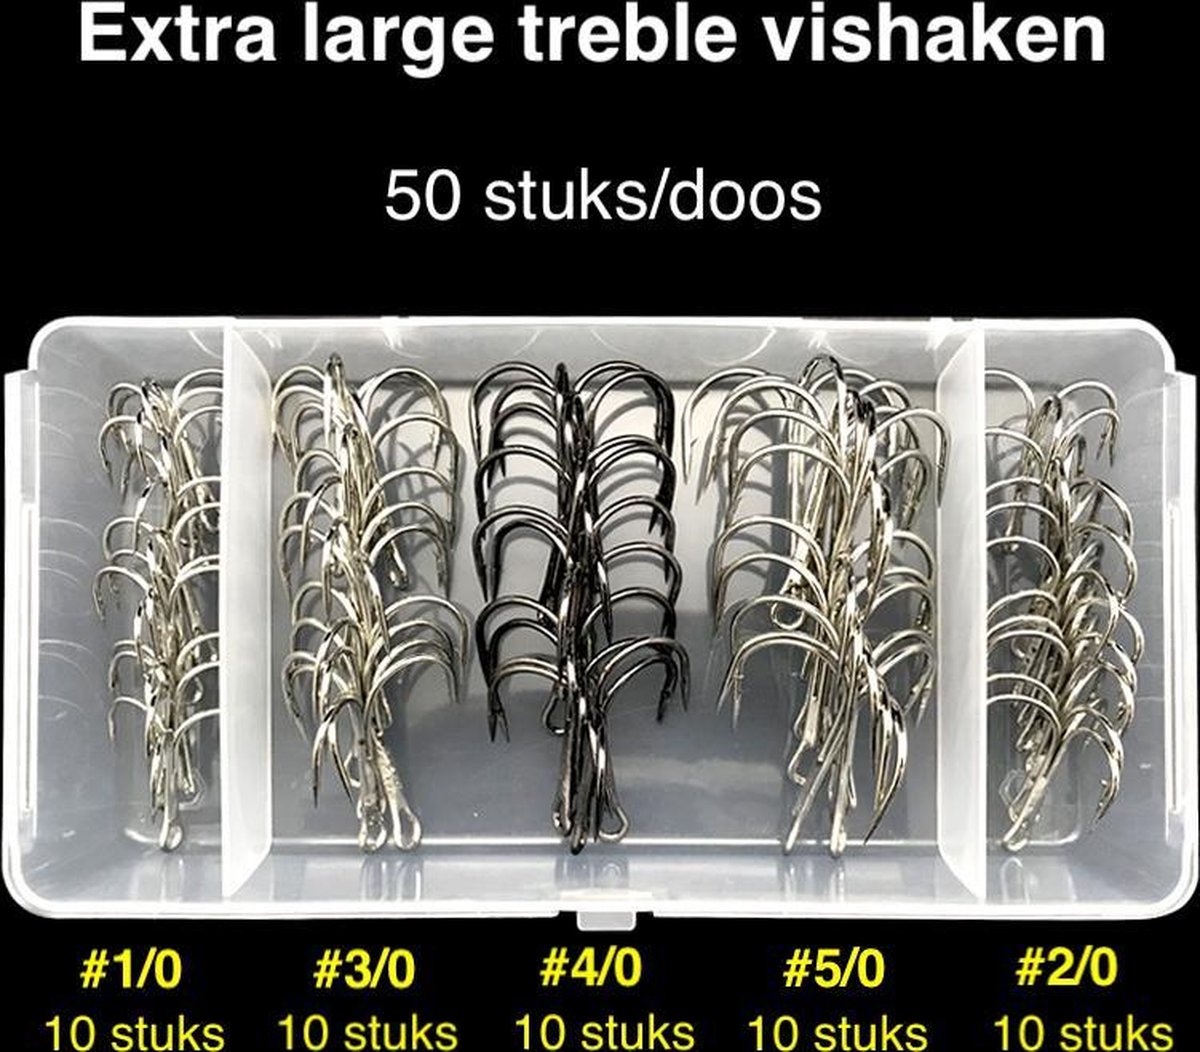 Vishaakjes - Vishaakjes set - Dreg - Treble vishaken set - Dreghaak - Vissen - Visdoos - 50 stuks - XL - Maat 1/0 2/0 3/0 4/0 5/0 - Merkloos